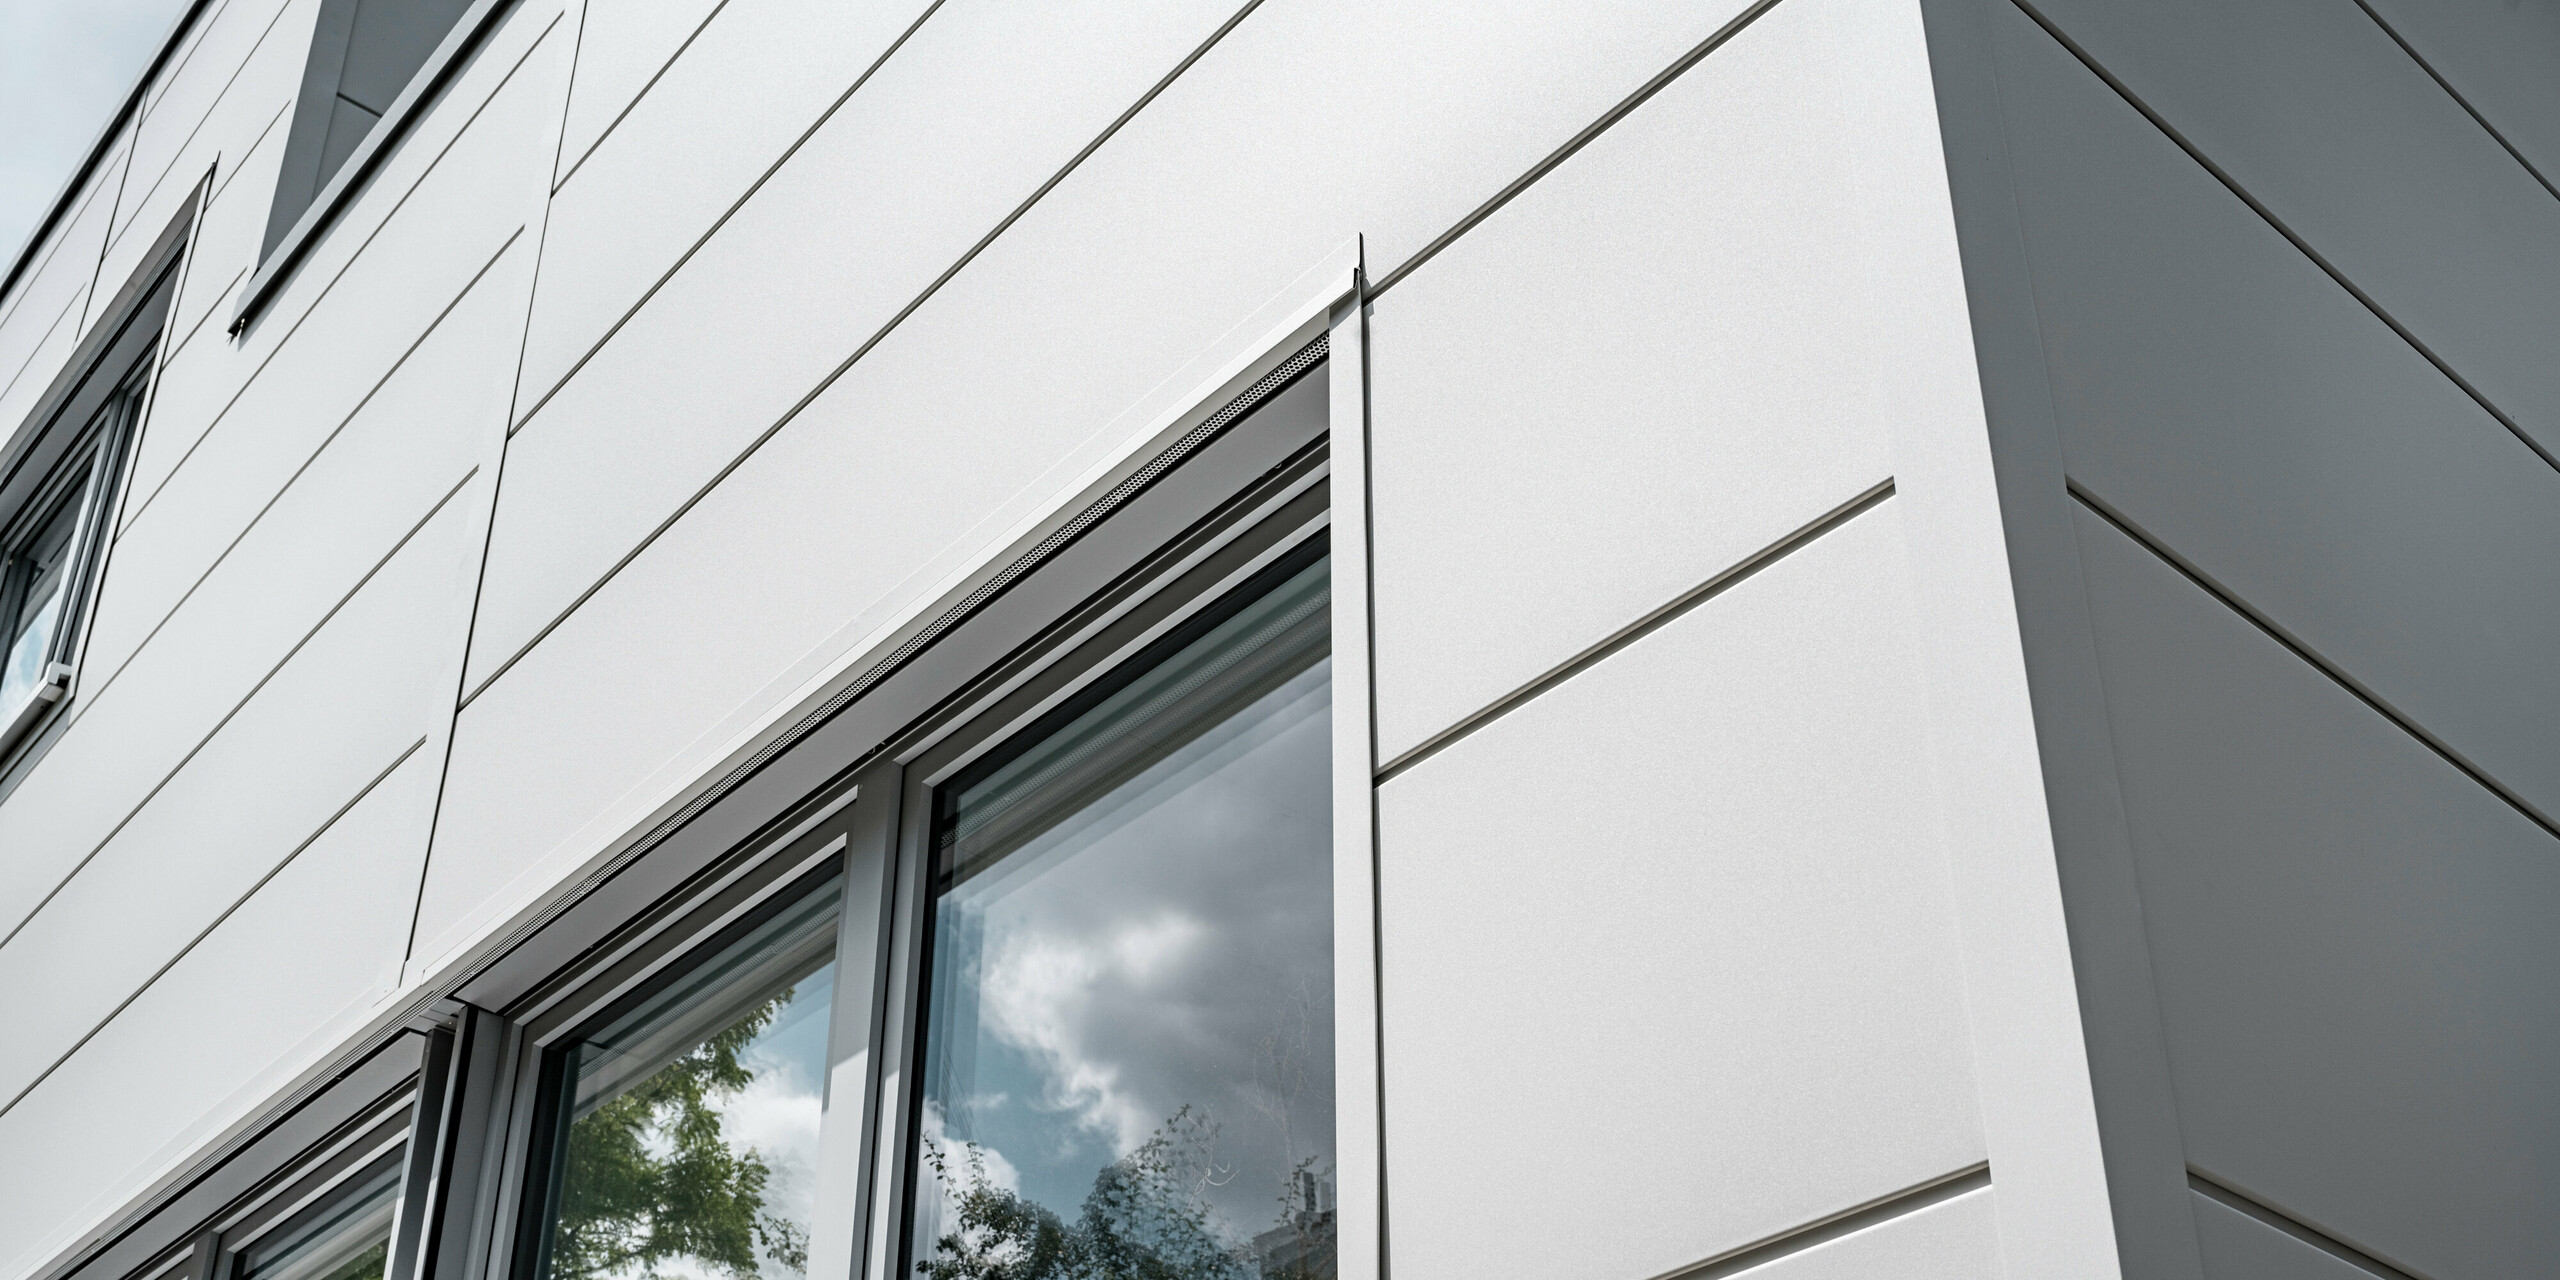 Großformatige PREFA Sidings umhüllen ein Firmengebäude in Oberschleißheim (Deutschland). Die extrabreiten Fassadenelemente aus Aluminium sind in der Farbe Prefaweiß gehalten.